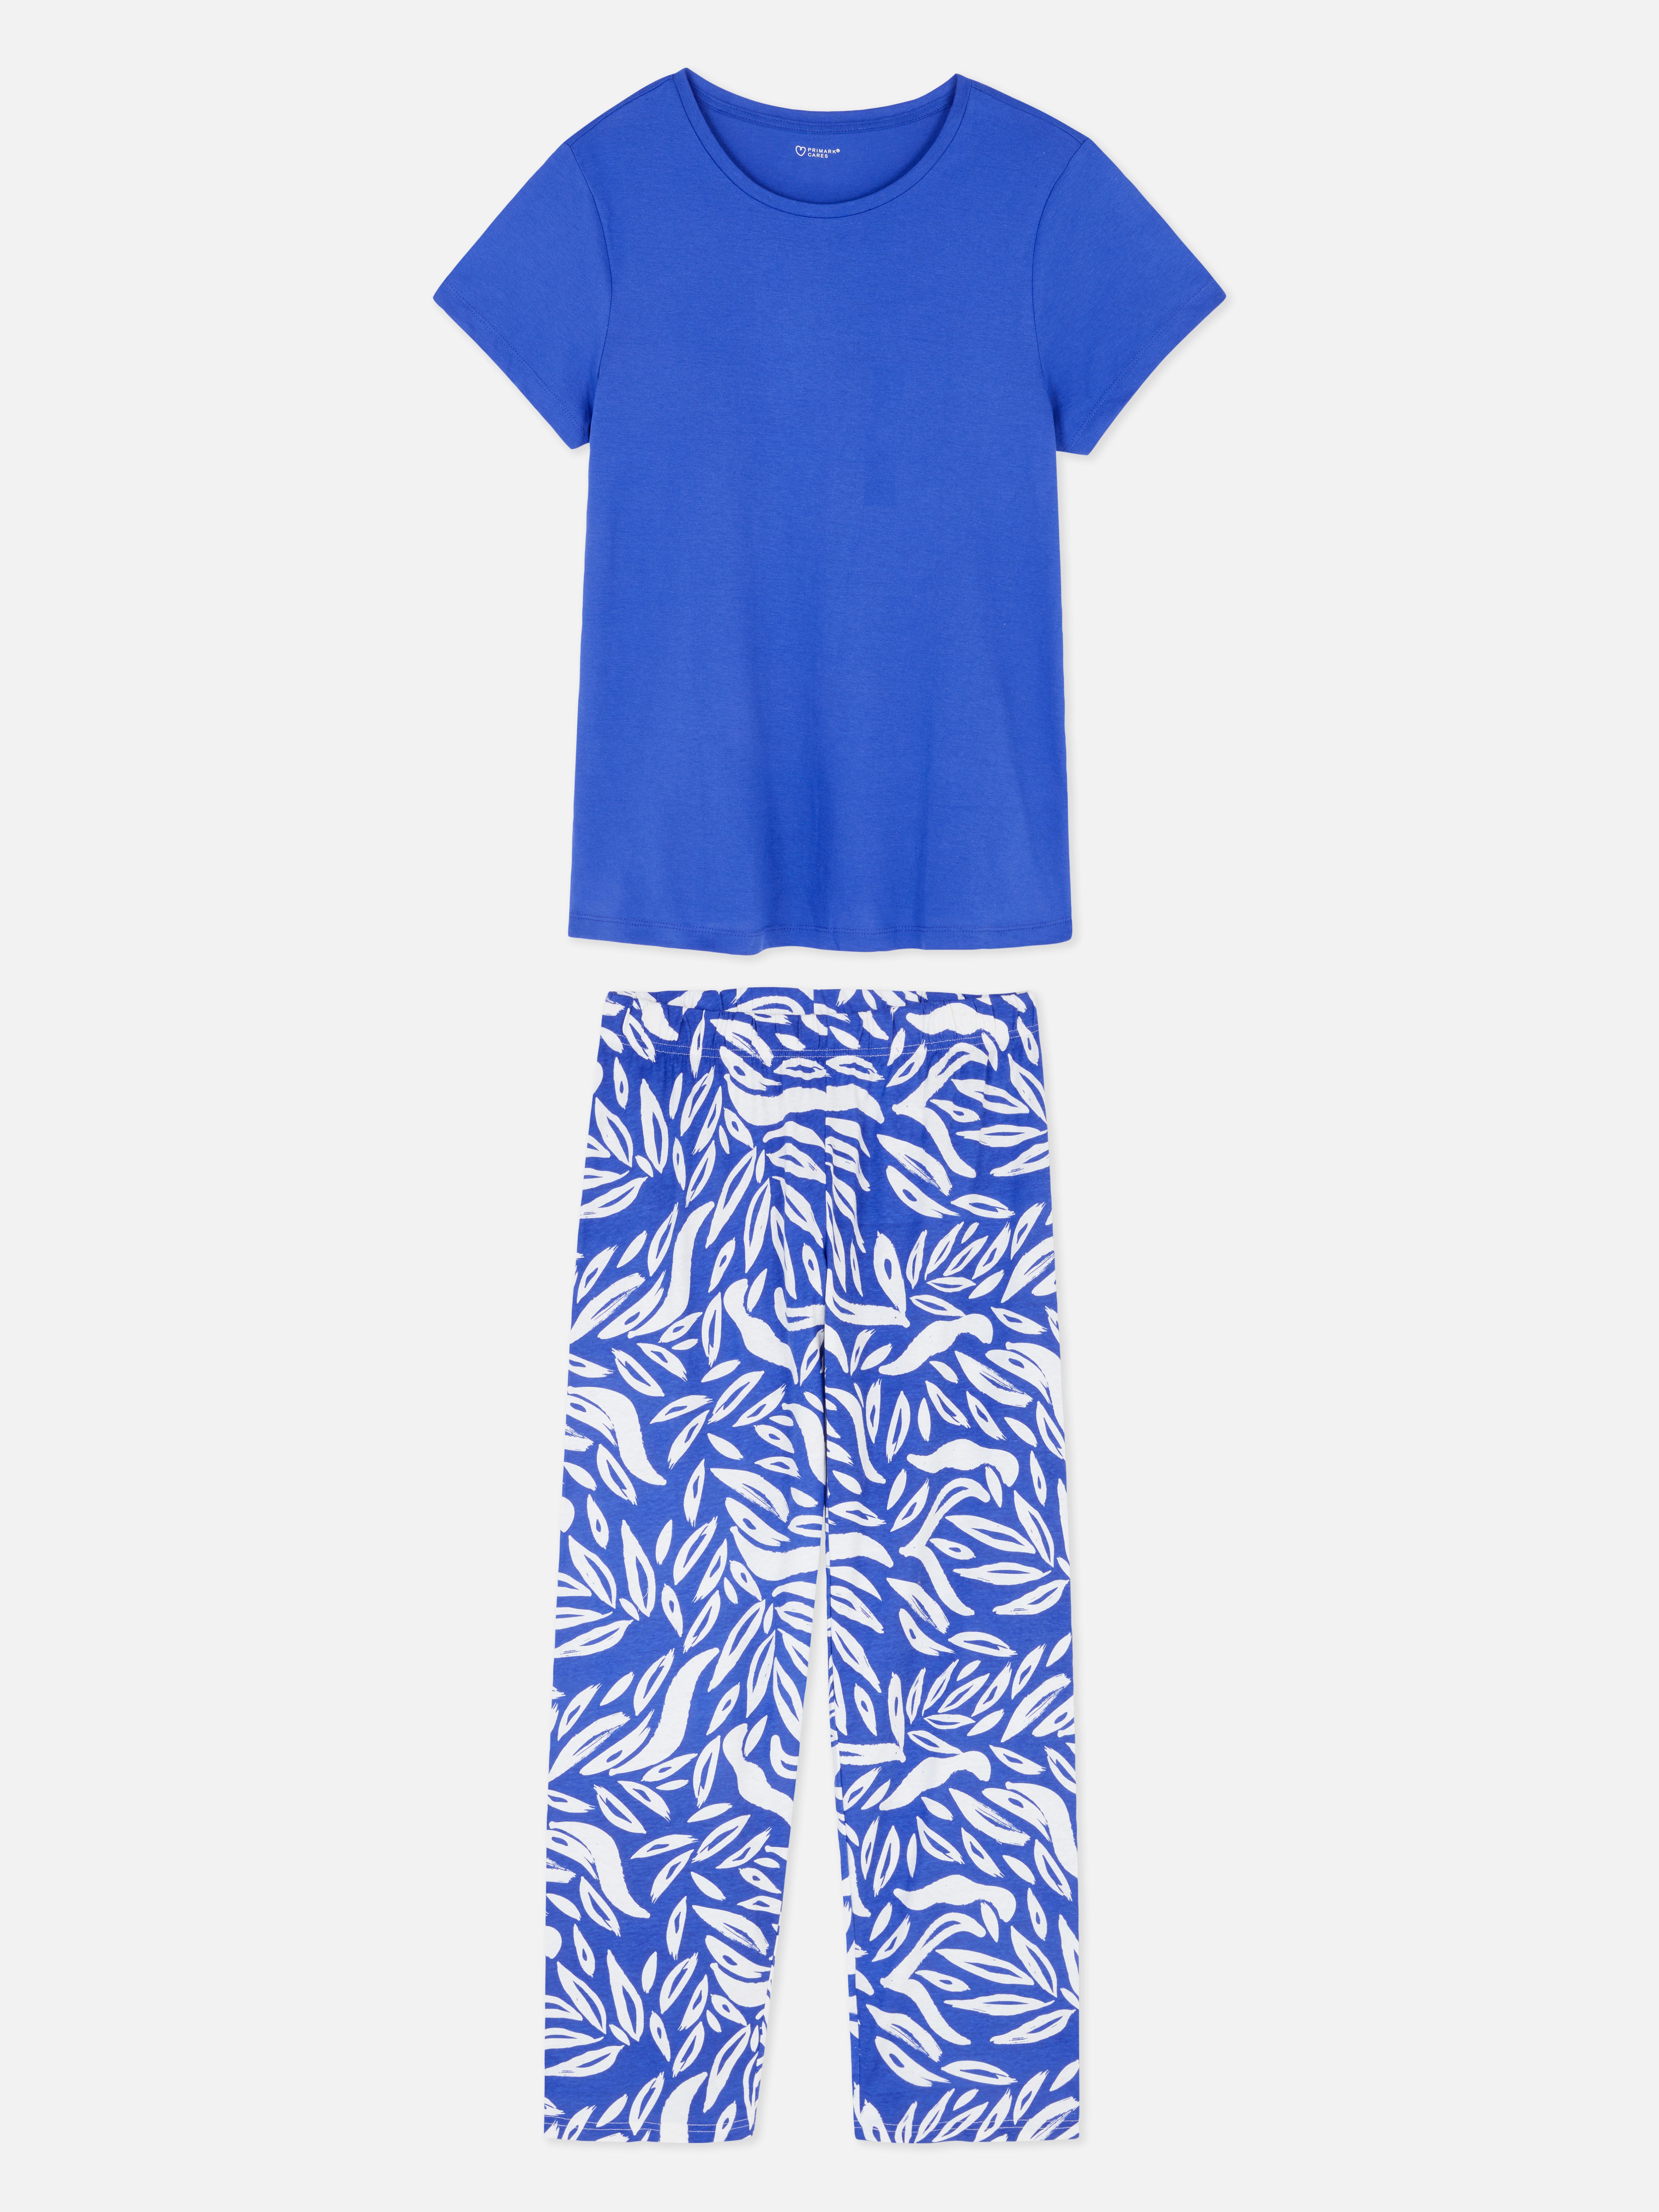 Pijamas para mujer |Conjuntos de pijamas manga corta y larga | Primark